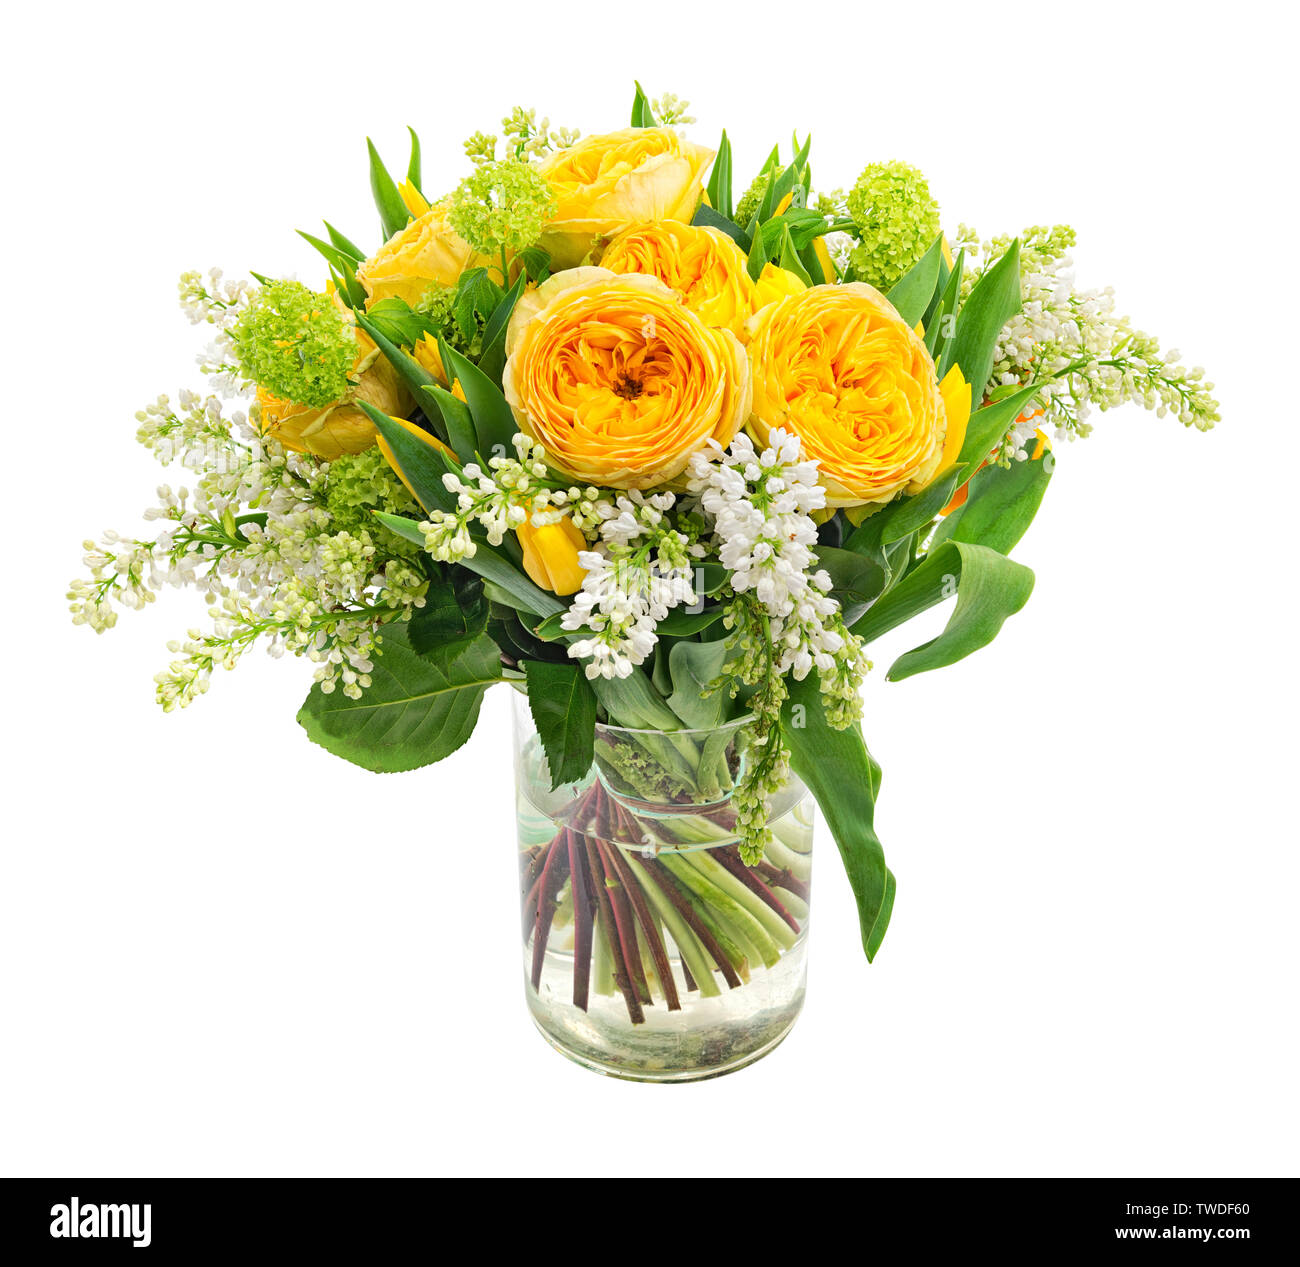 Bouquet de renoncule Banque d'images détourées - Alamy